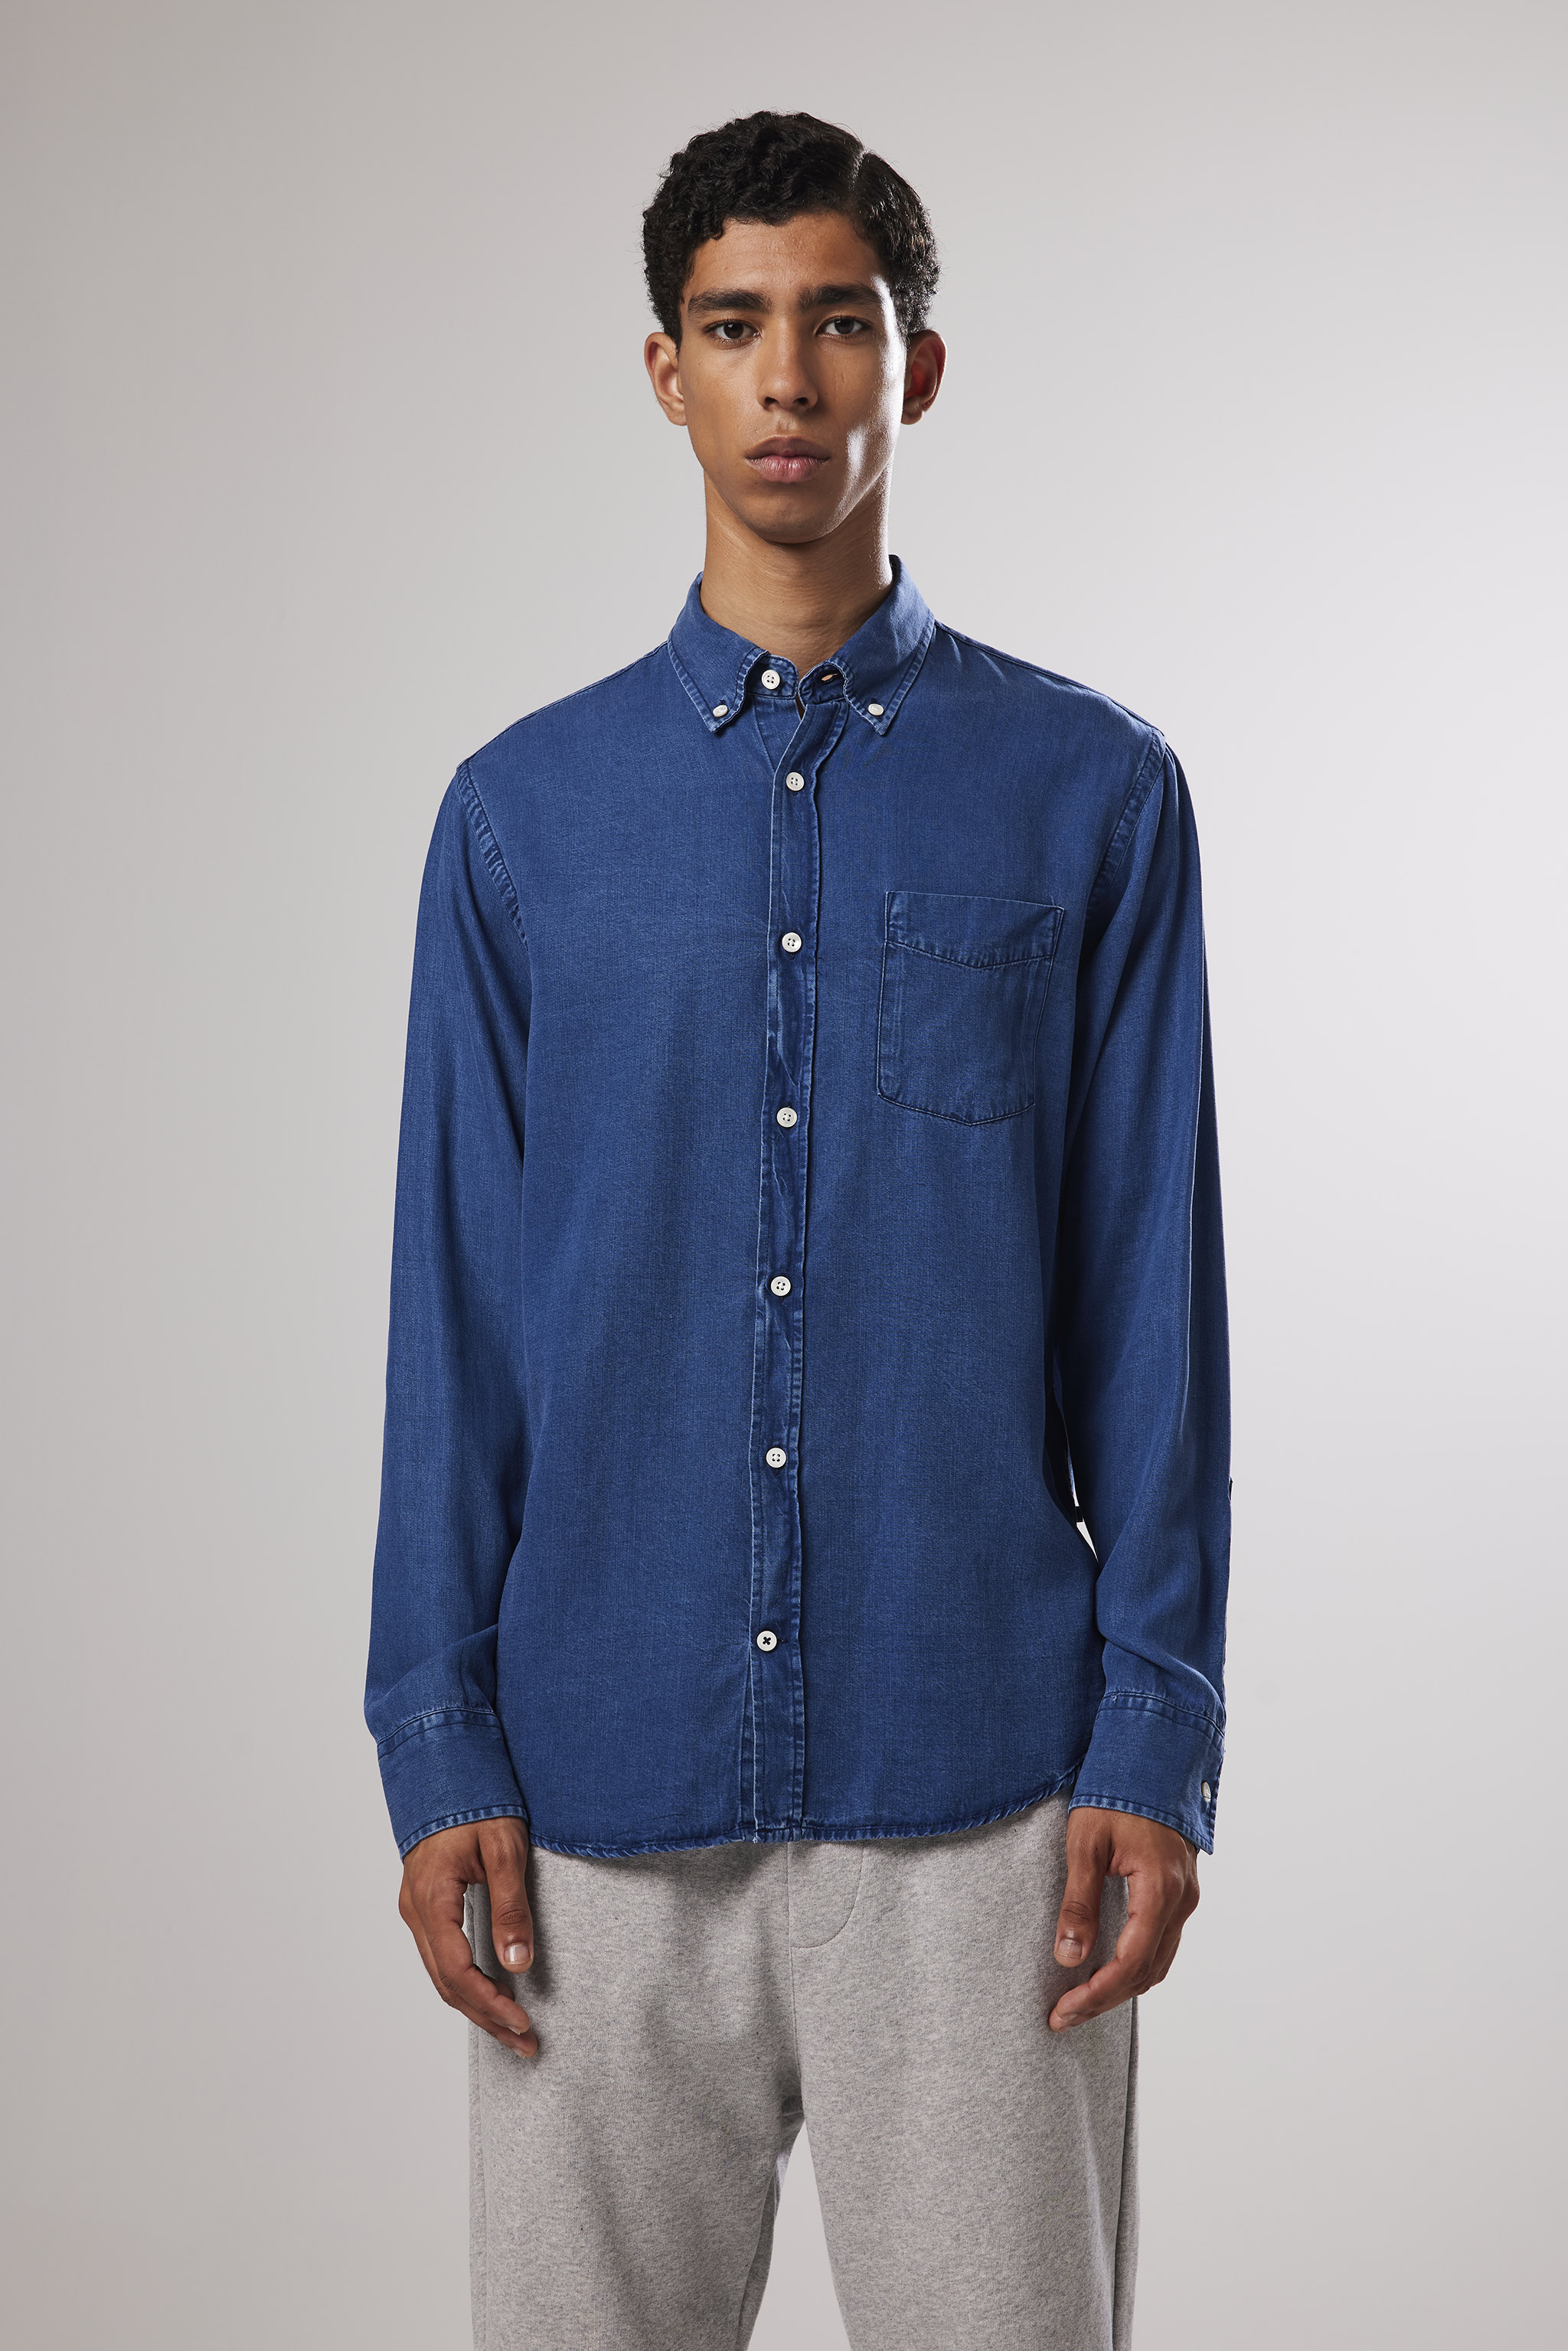 Levon 5767 men's shirt - Blue - Buy online at NN07®